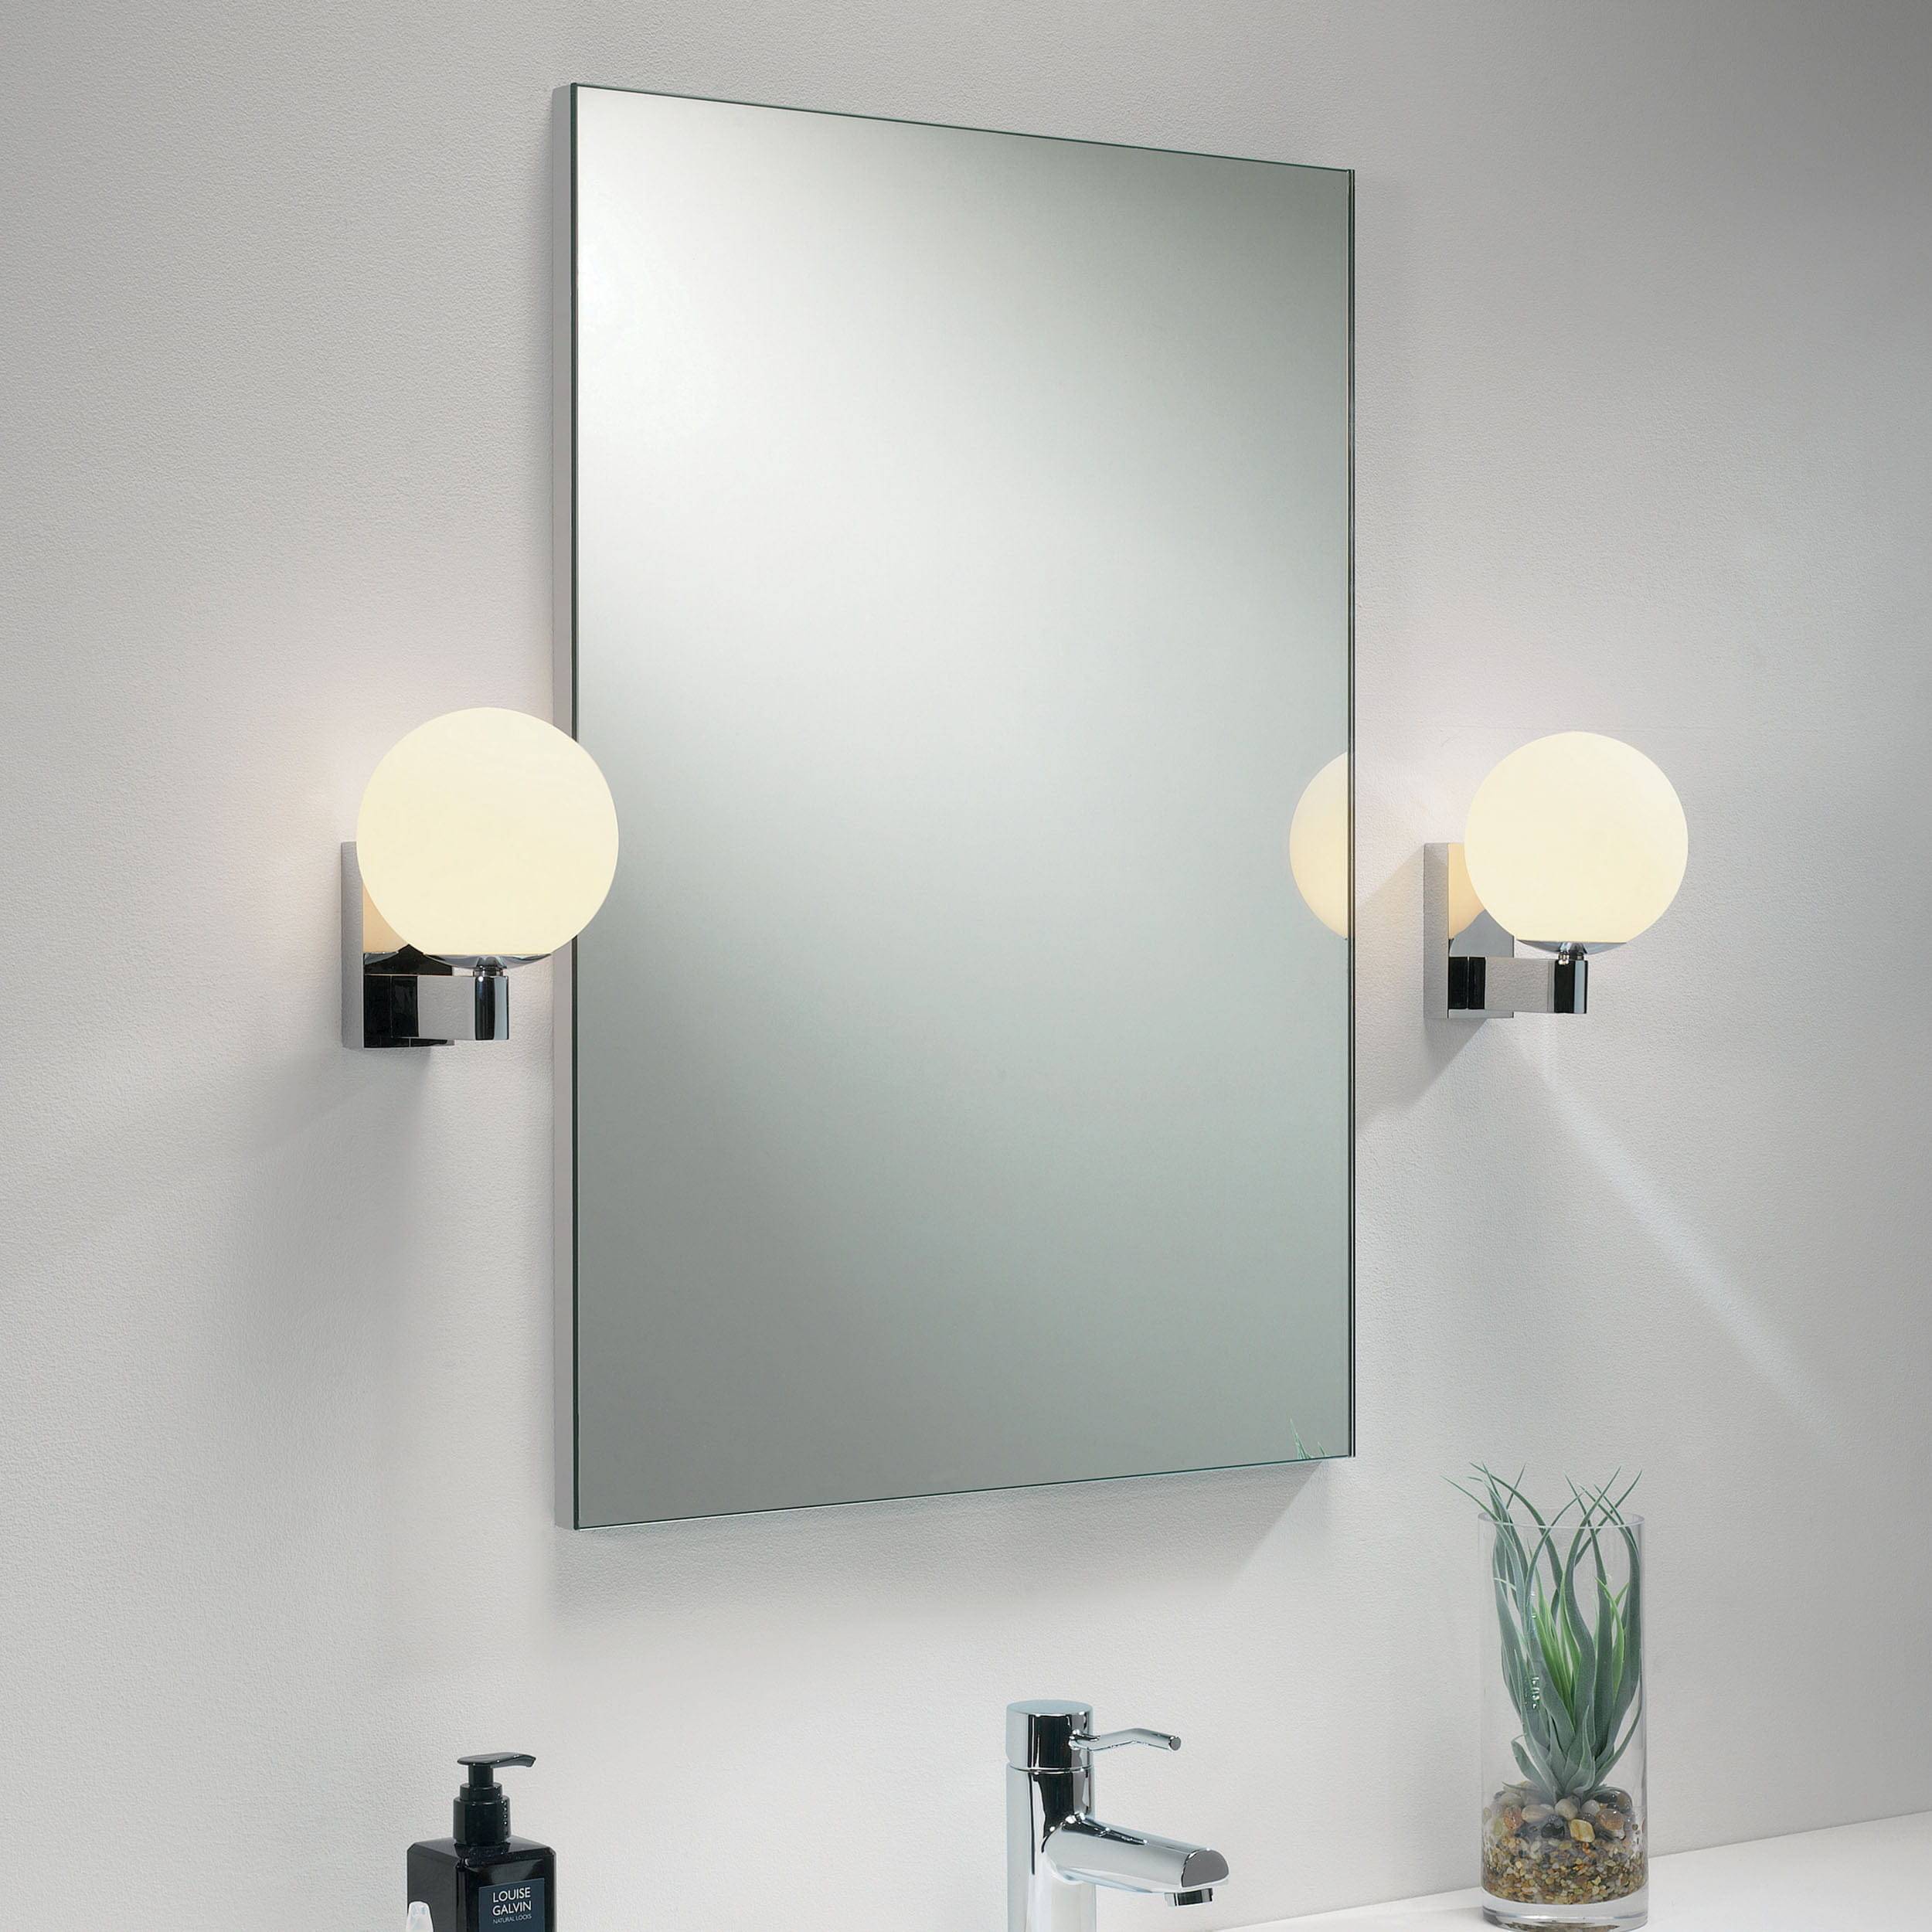 Настенный светильник в ванну. Бра Astro Sagara 1168001. Светильник в ванную комнату. Светильник для зеркала в ванной. Бра для ванной комнаты.